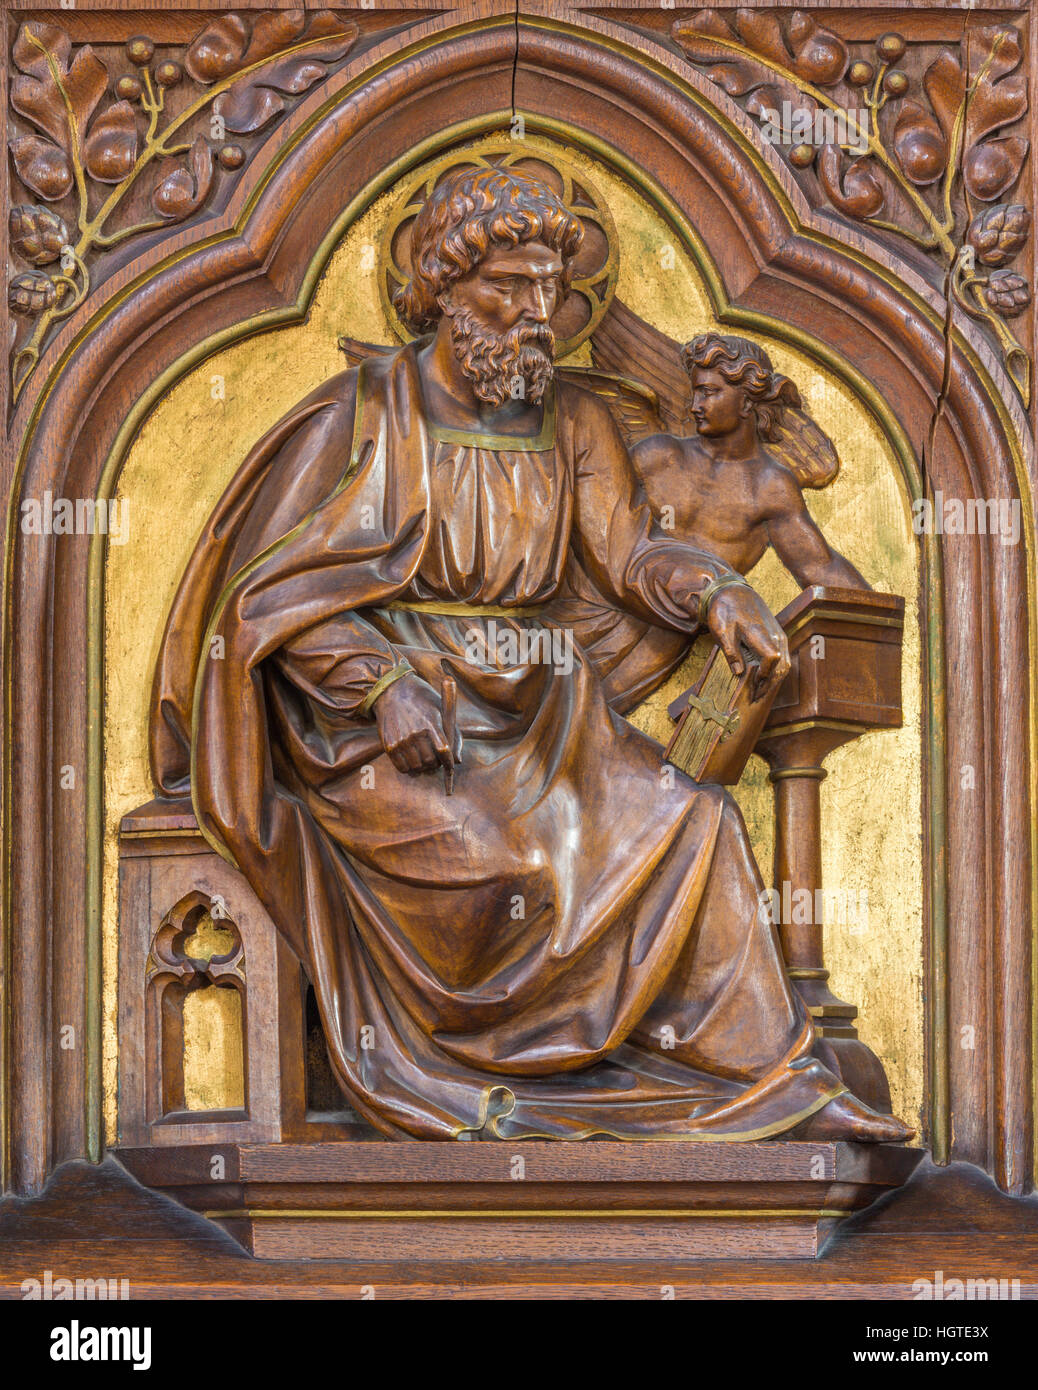 Vienne, Autriche - 19 décembre 2016 : Le relief sculpté de Saint Matthieu l'Évangéliste dans l'église Brigitta Kirche par artiste inconnu de 19 ans. 100. Banque D'Images